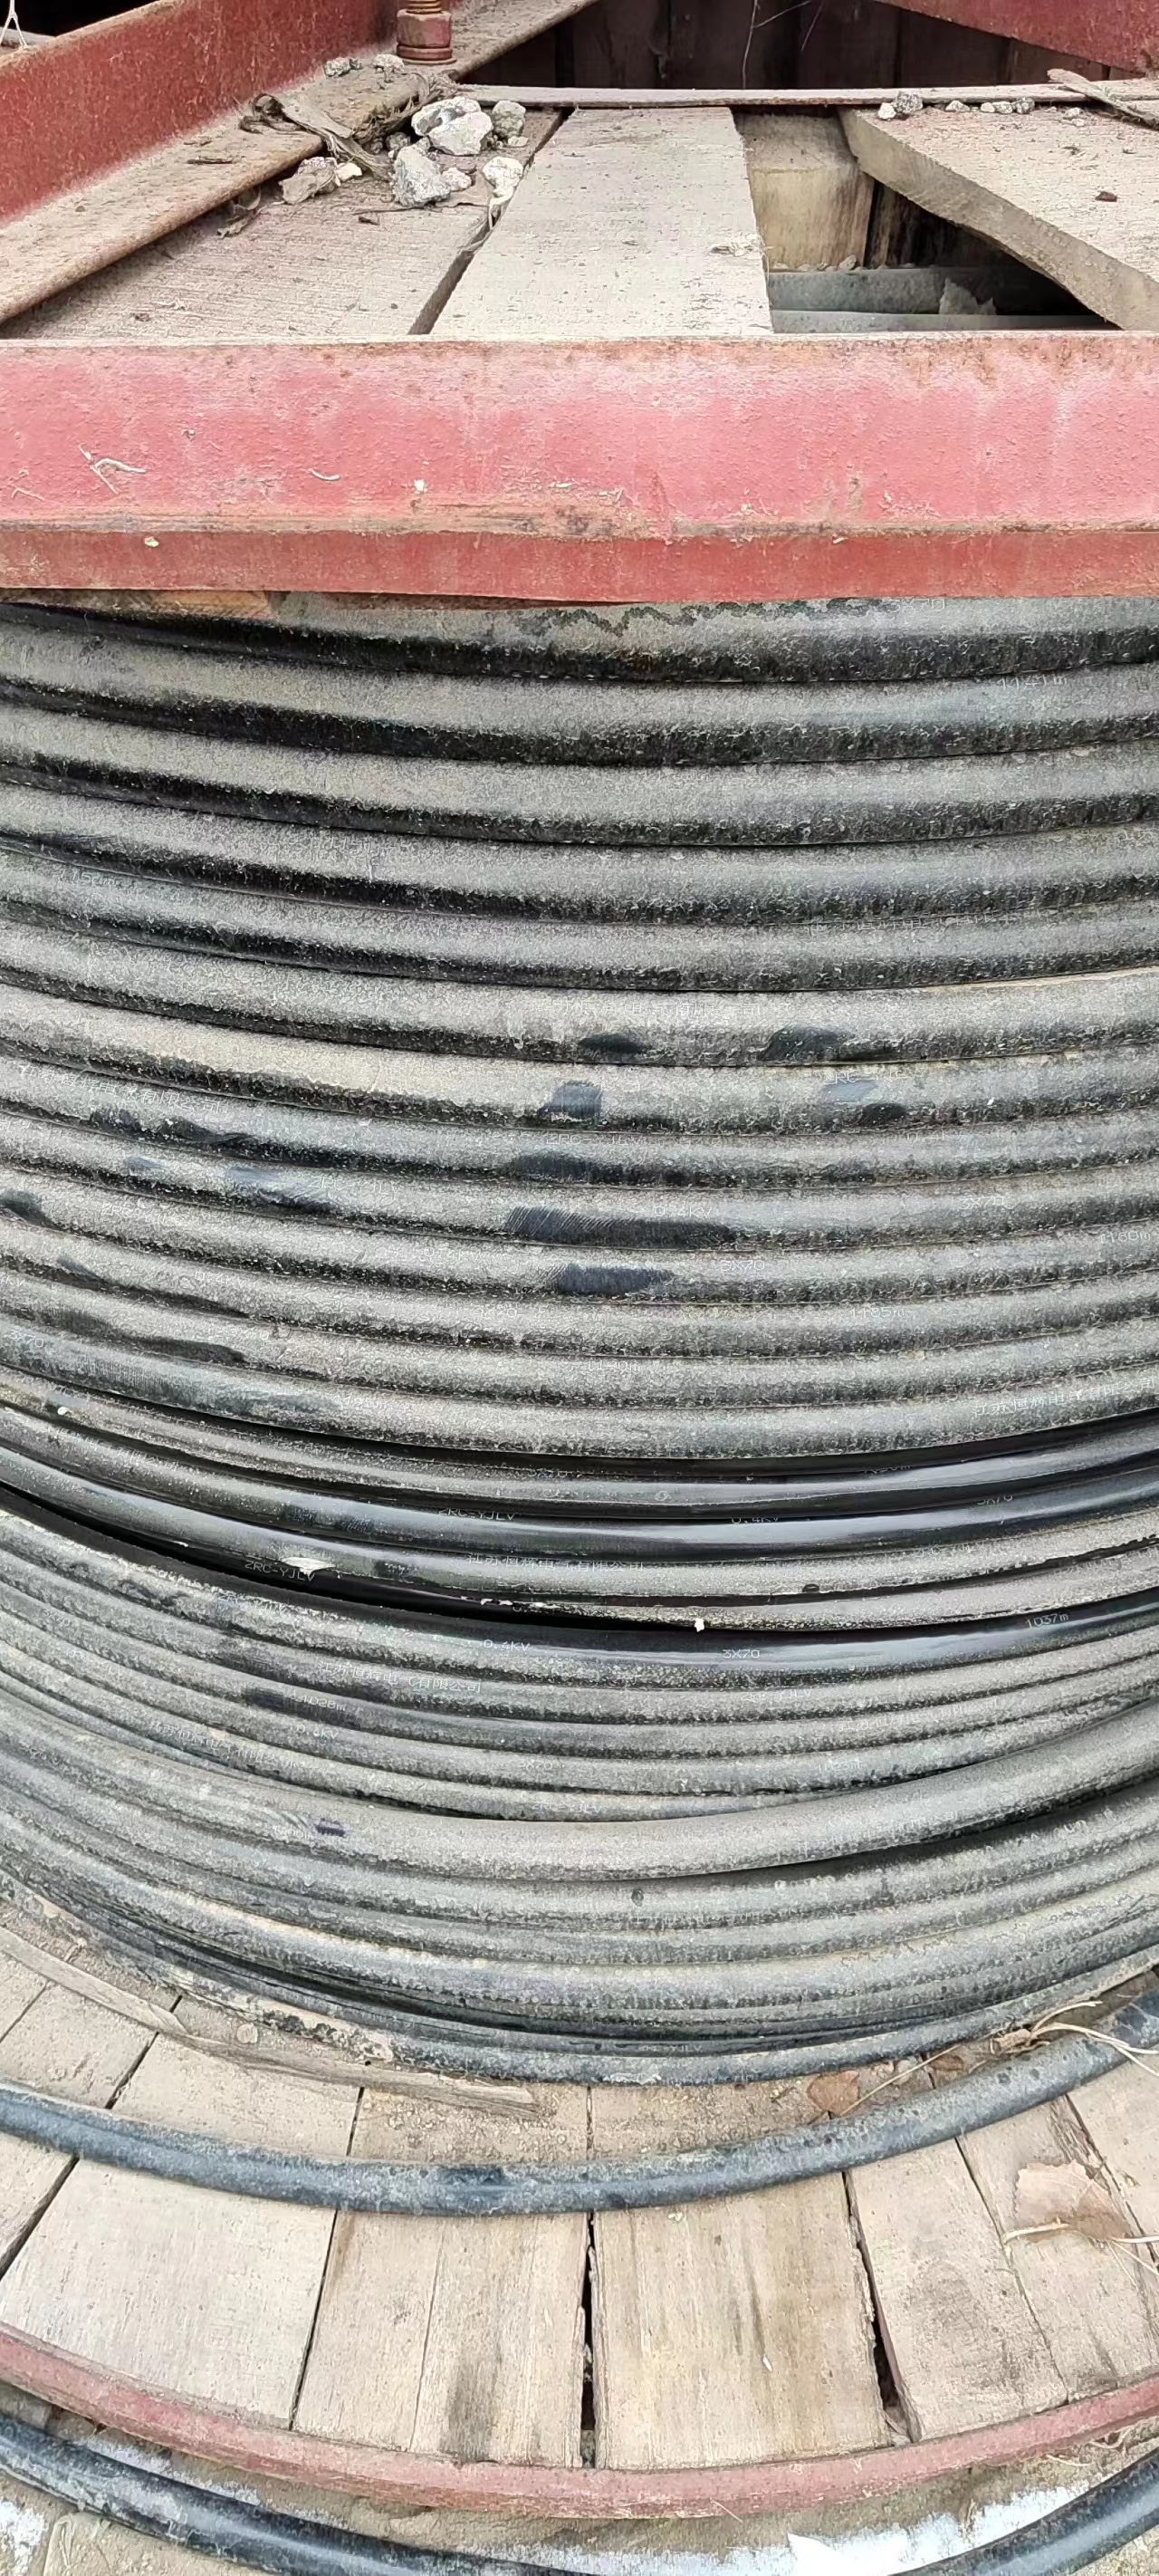 风能电缆回收 废旧电缆回收长期合作